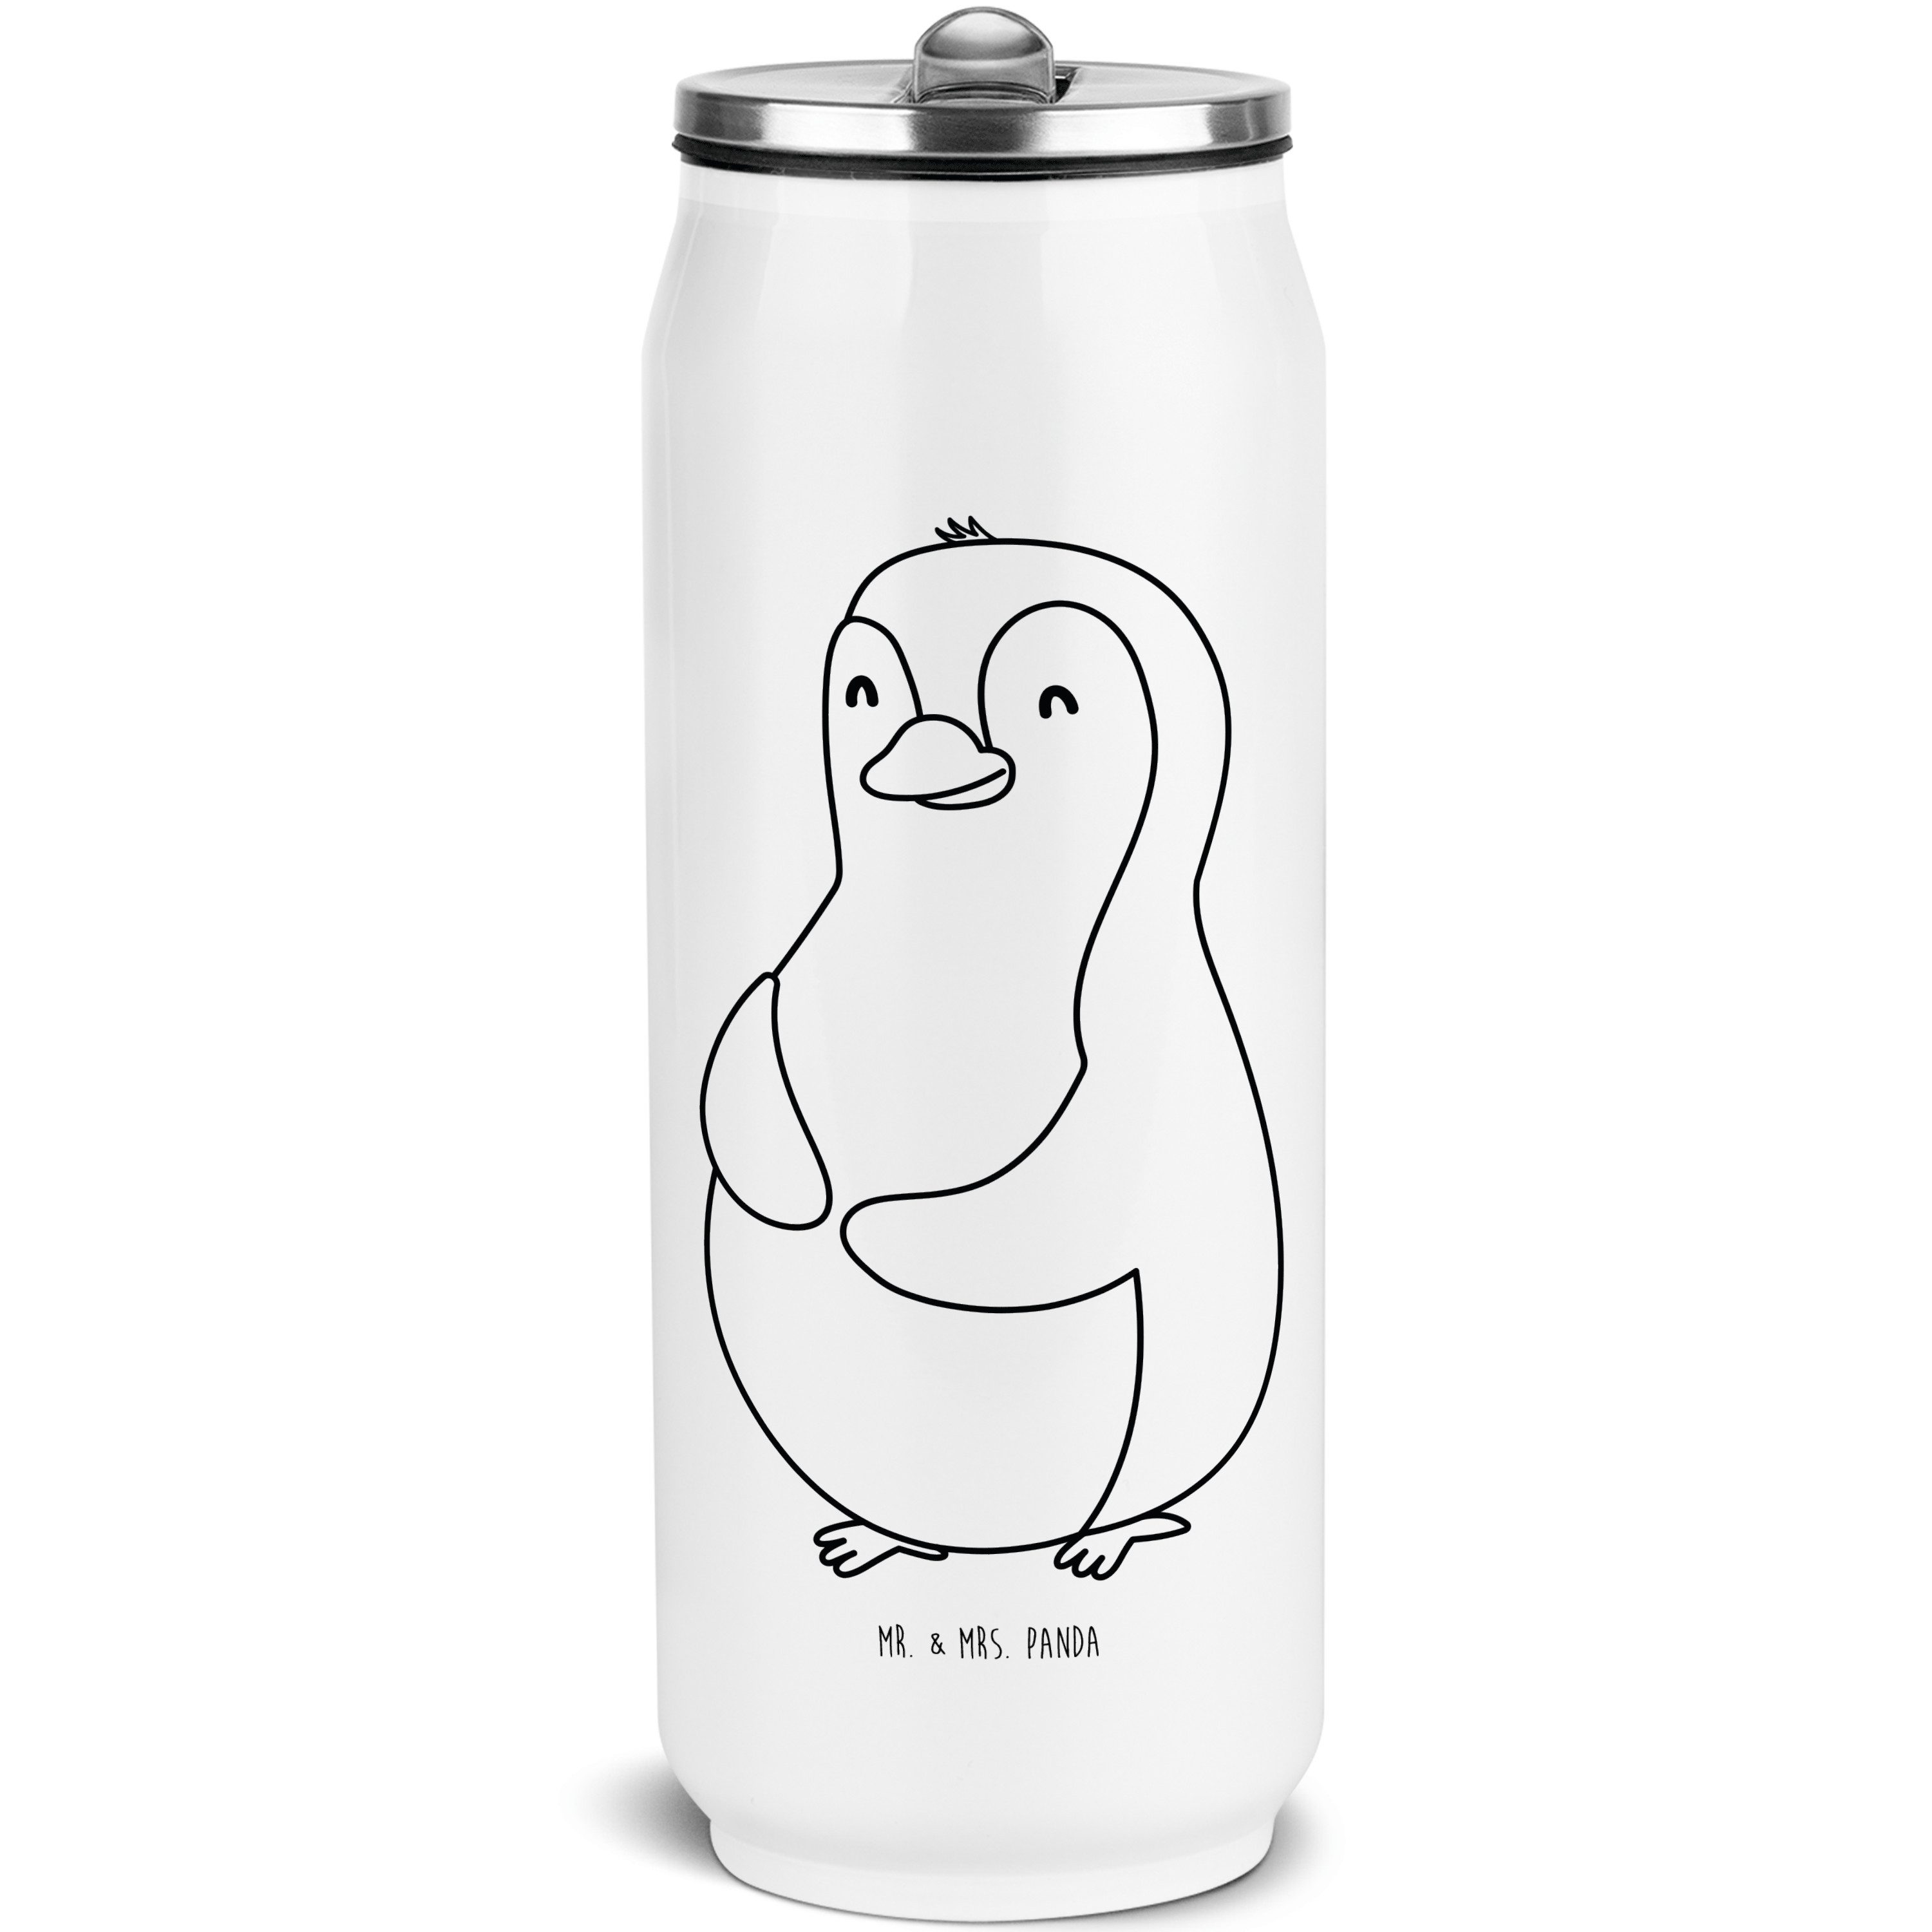 Mr. & Mrs. Panda Isolierflasche Pinguin Diät - Weiß - Geschenk, Trinkflasche, glücklich, Abnehmen, Se, Integrierter Trinkhalm.